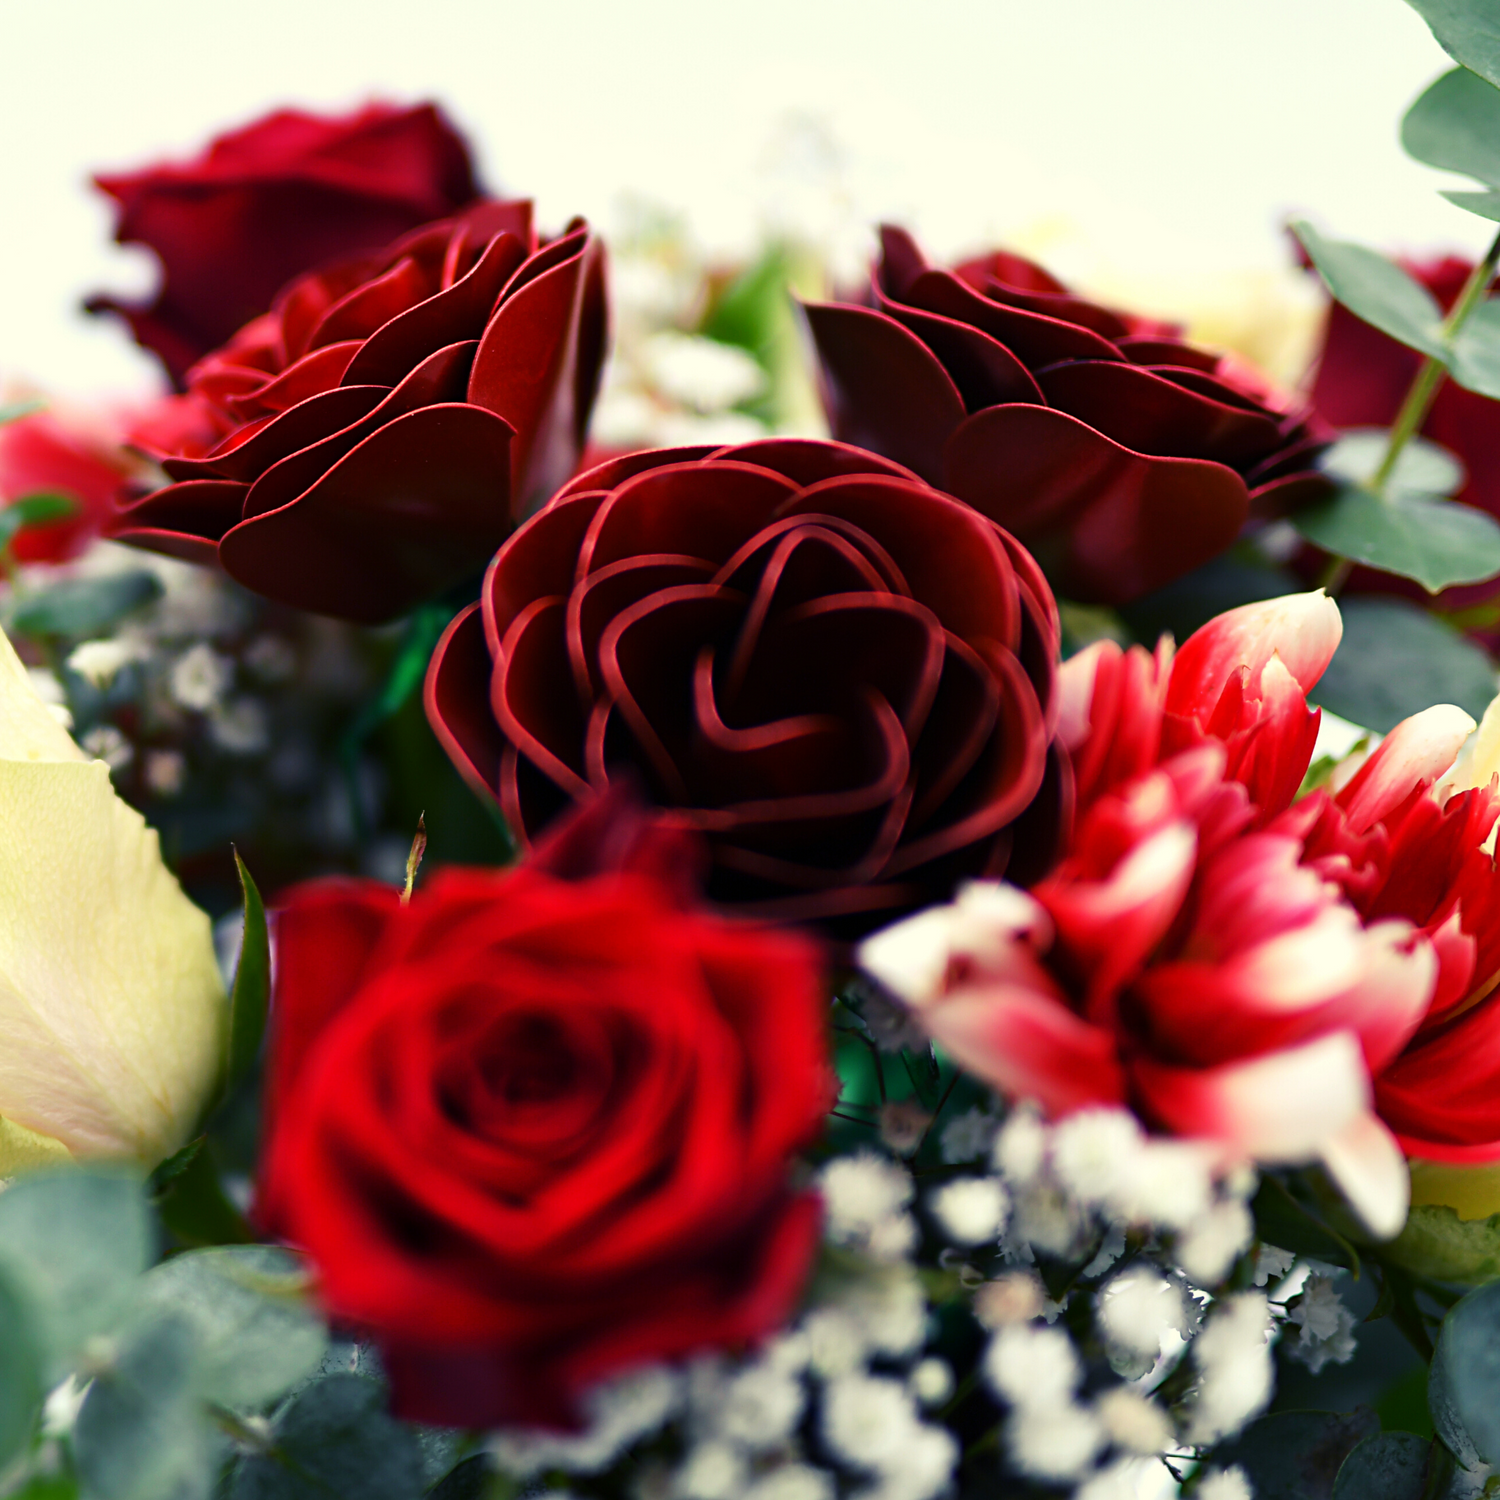 Großaufnahme von einem Strauß roten und weißen Blumen, in der Mitte sind 3 Edelstahlrosen zu sehen, ringsum weiße und rote echte Blumen